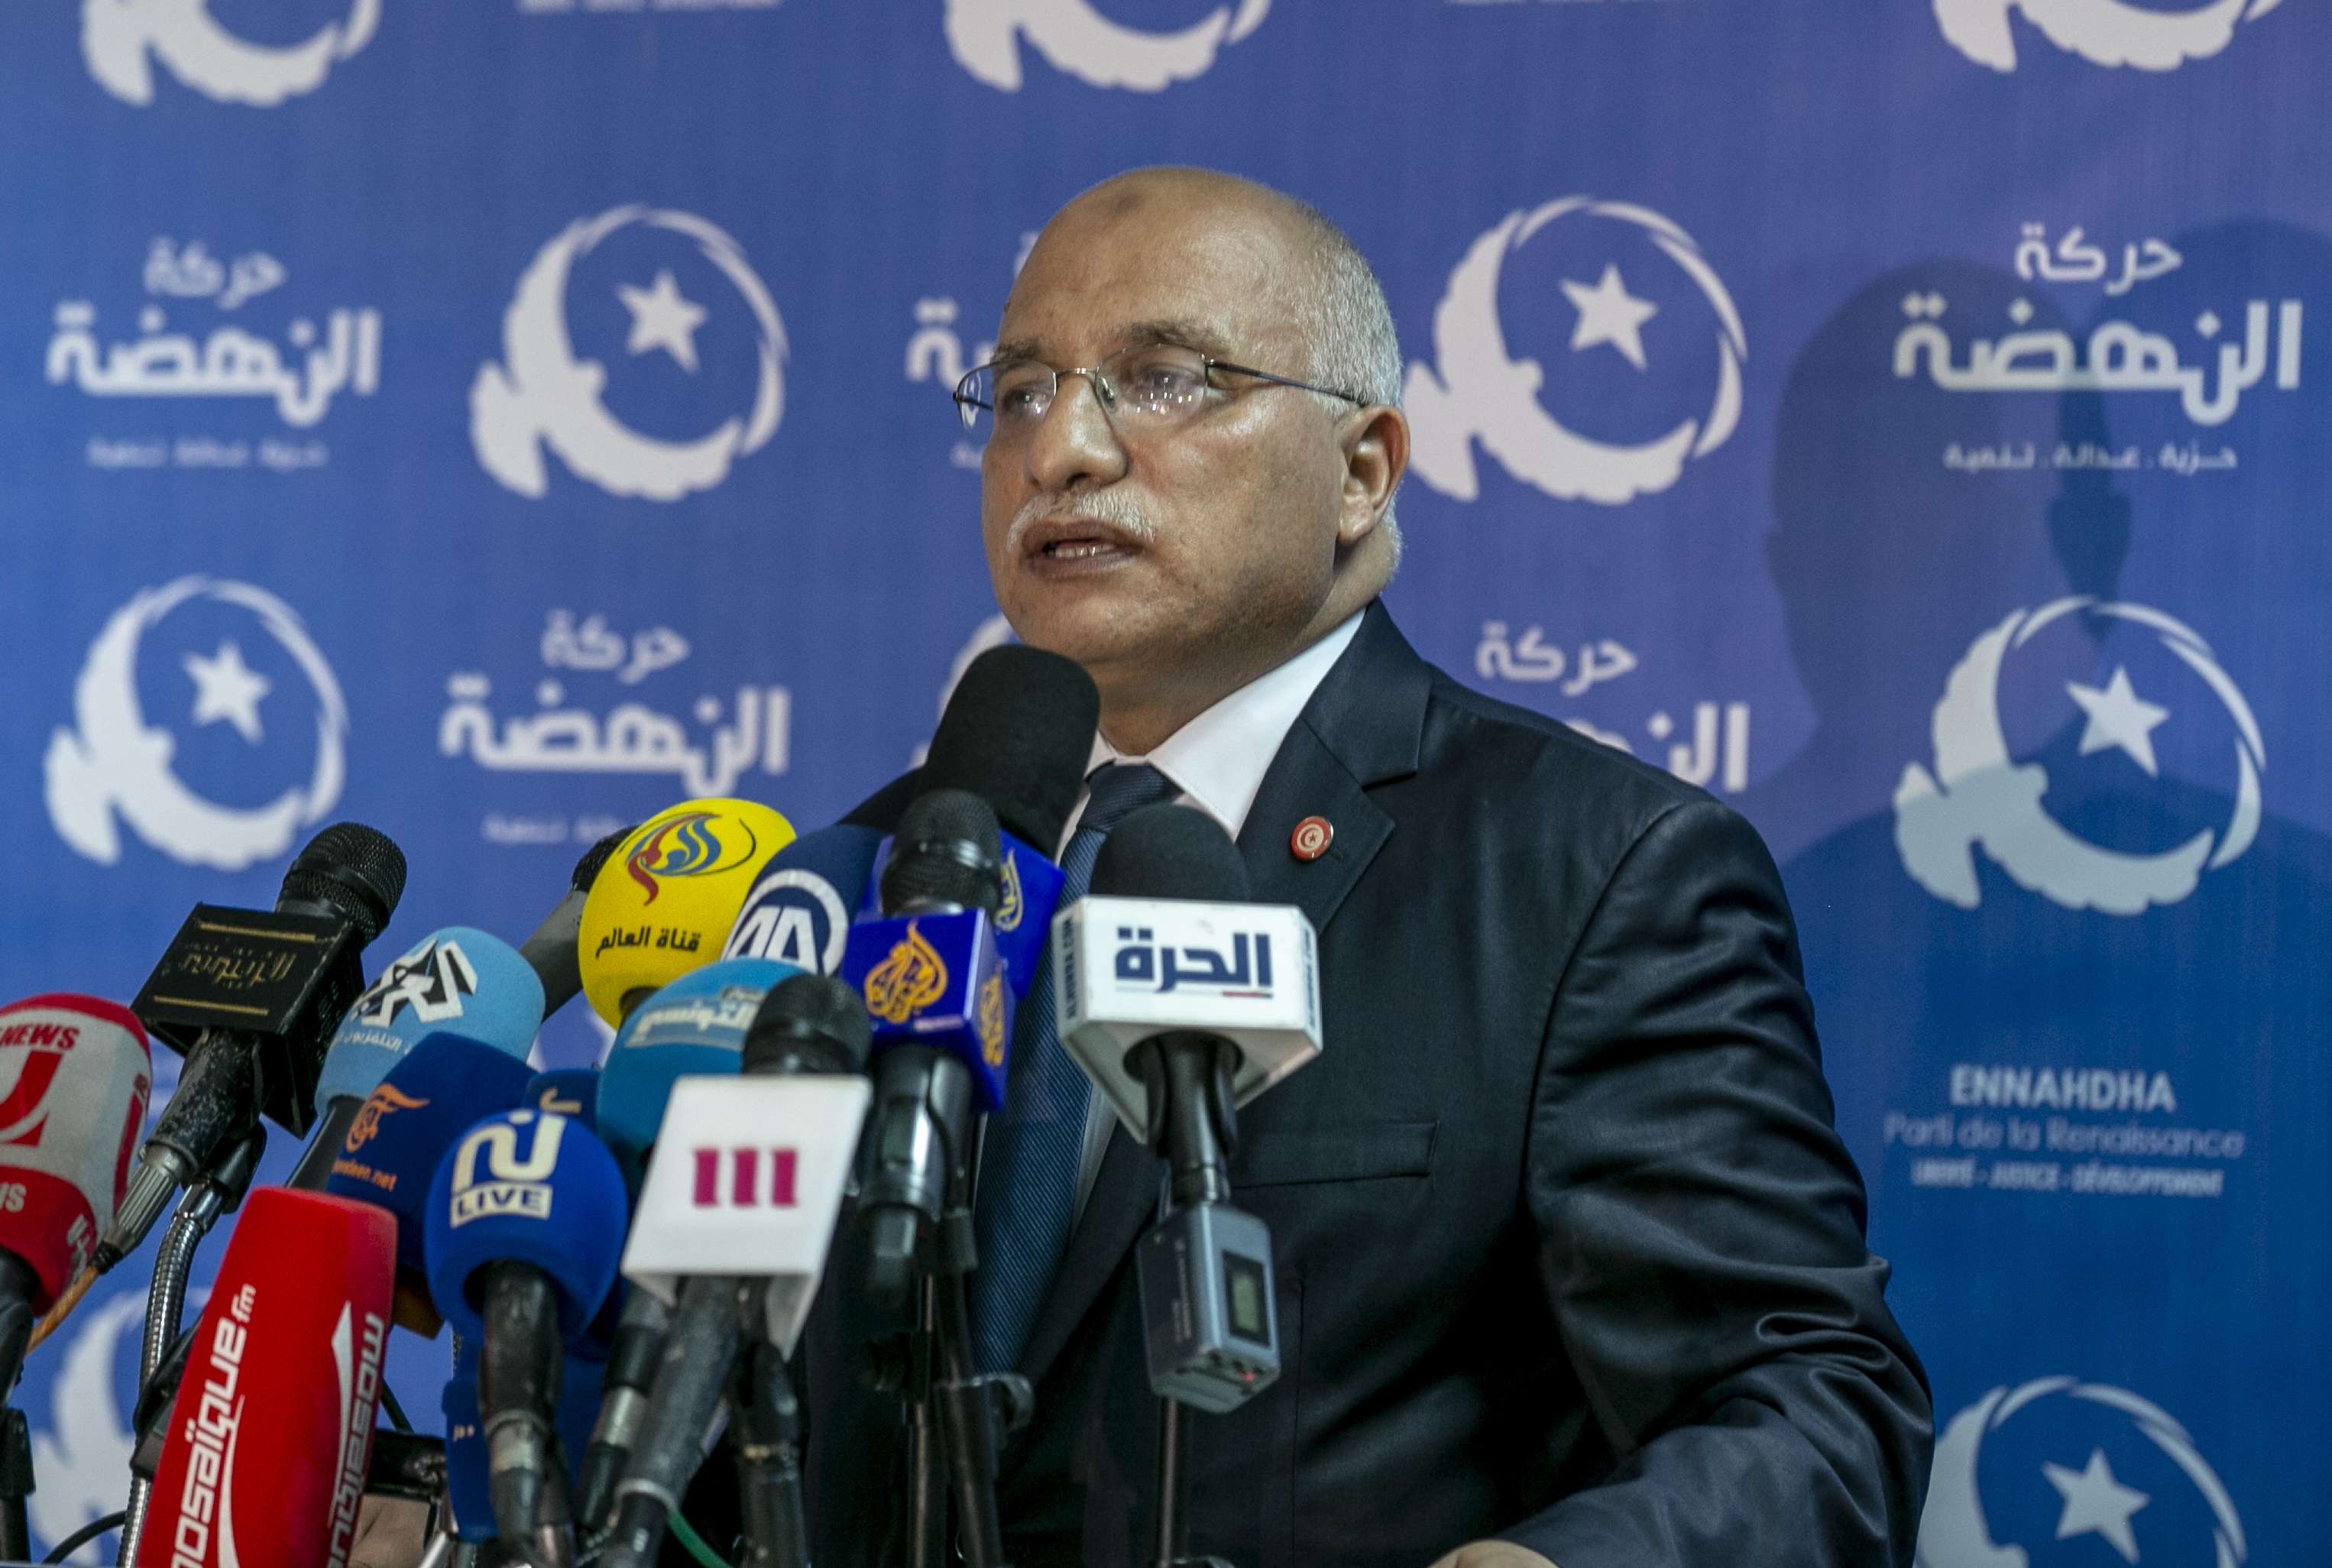 عبدالبكريم الهاروني رئيس مجلس الشورى بحركة النهضة